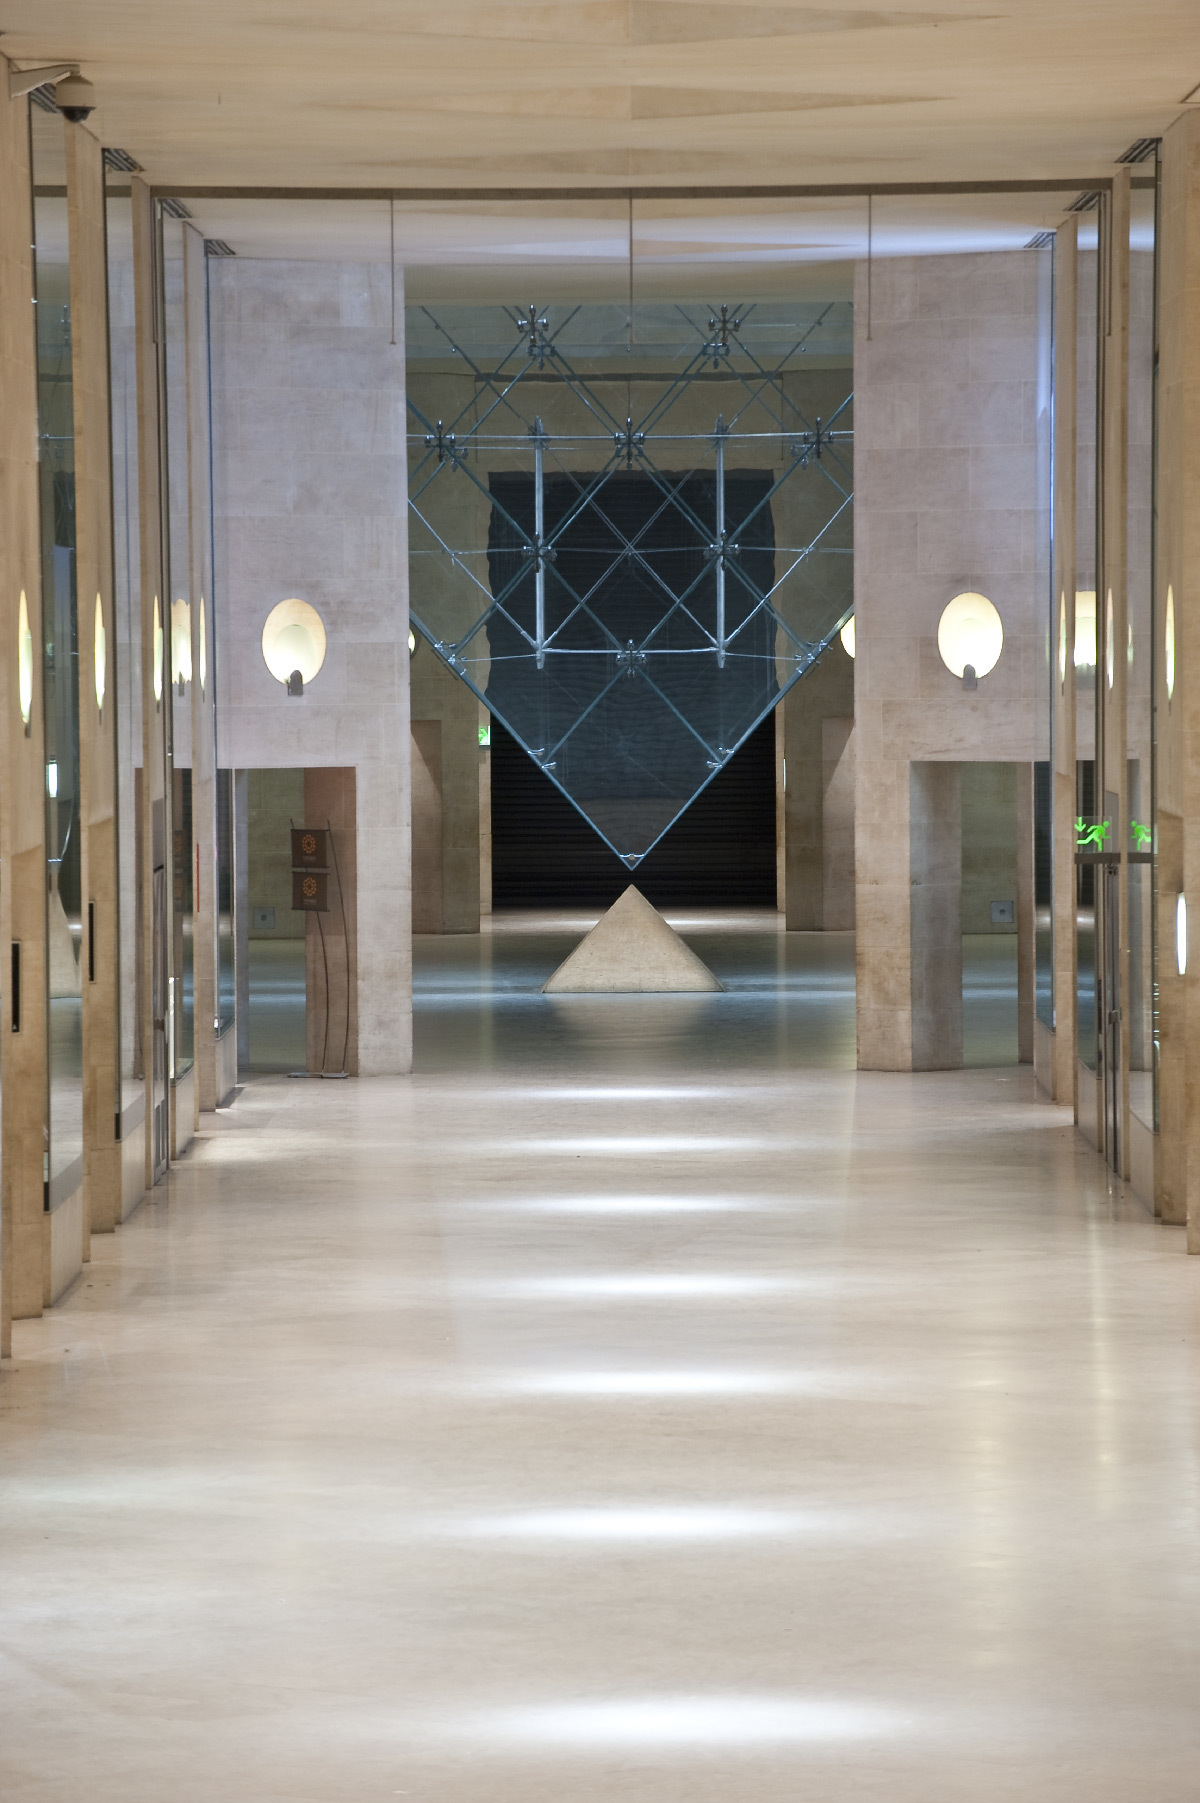 Galerie du Carrousel, pyramide inversée, Paris, France - Architecte : Ieoh Ming Pei - Concepteur lumière : Jean-Philippe Corrigou © Caribou Concept